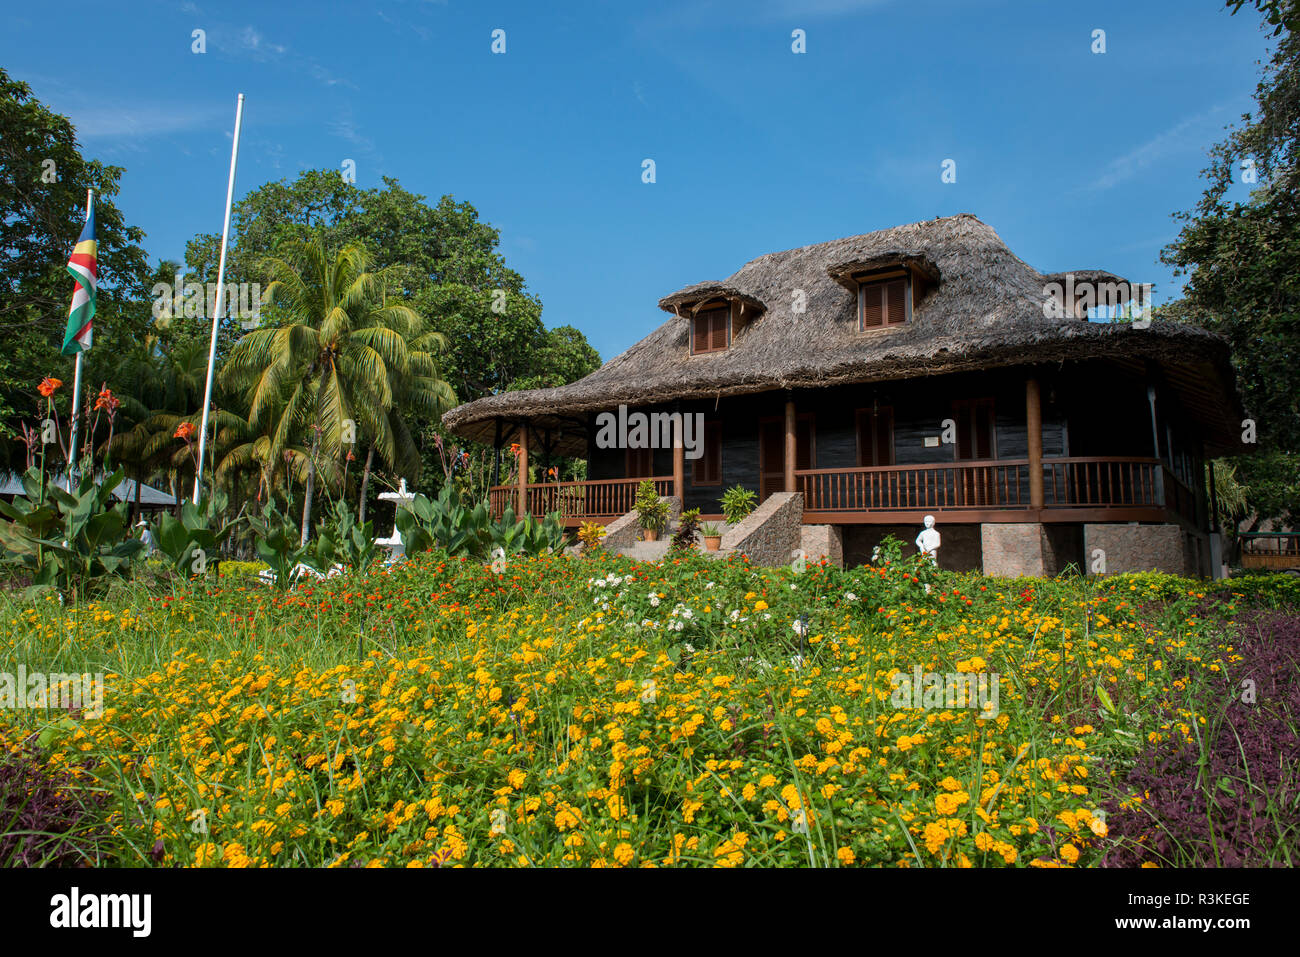 Seychelles, La Digue, L'Union Estate. Maison de Plantation historique, Patrimoine National. Résidence typique avec toit de chaume. Banque D'Images